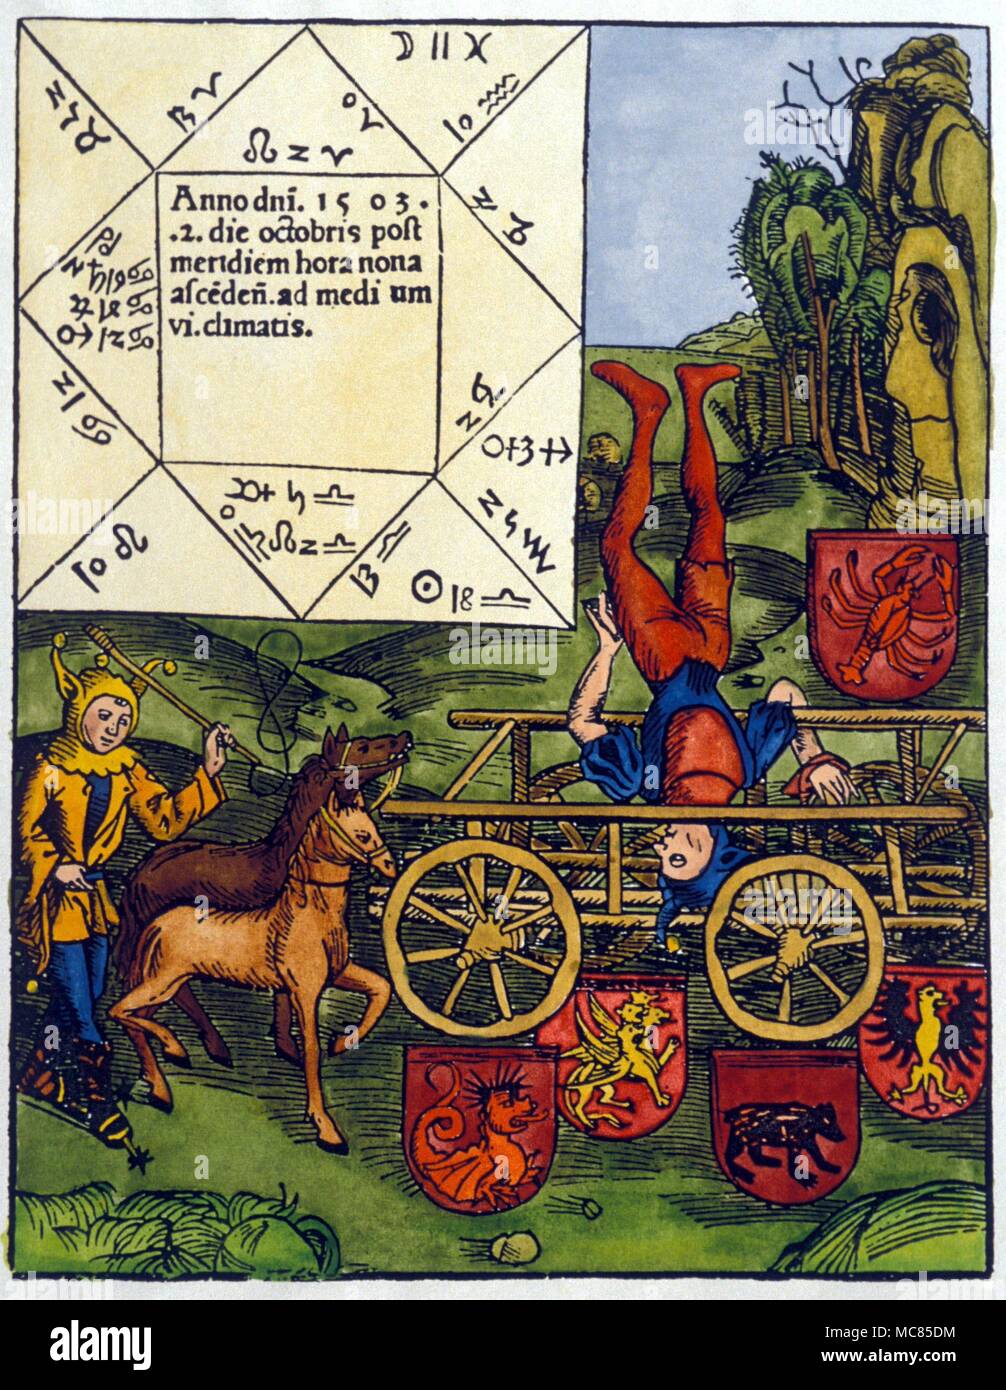 Horóscopo emitidos para el 2 de octubre de 1503 con la gran conjunción de planetas en cáncer. Xilografía de 1503. Uno de los payasos es haciendo un truco de equilibrio, pero es difícil ver lo que esto tiene que ver con el horóscopo. Foto de stock